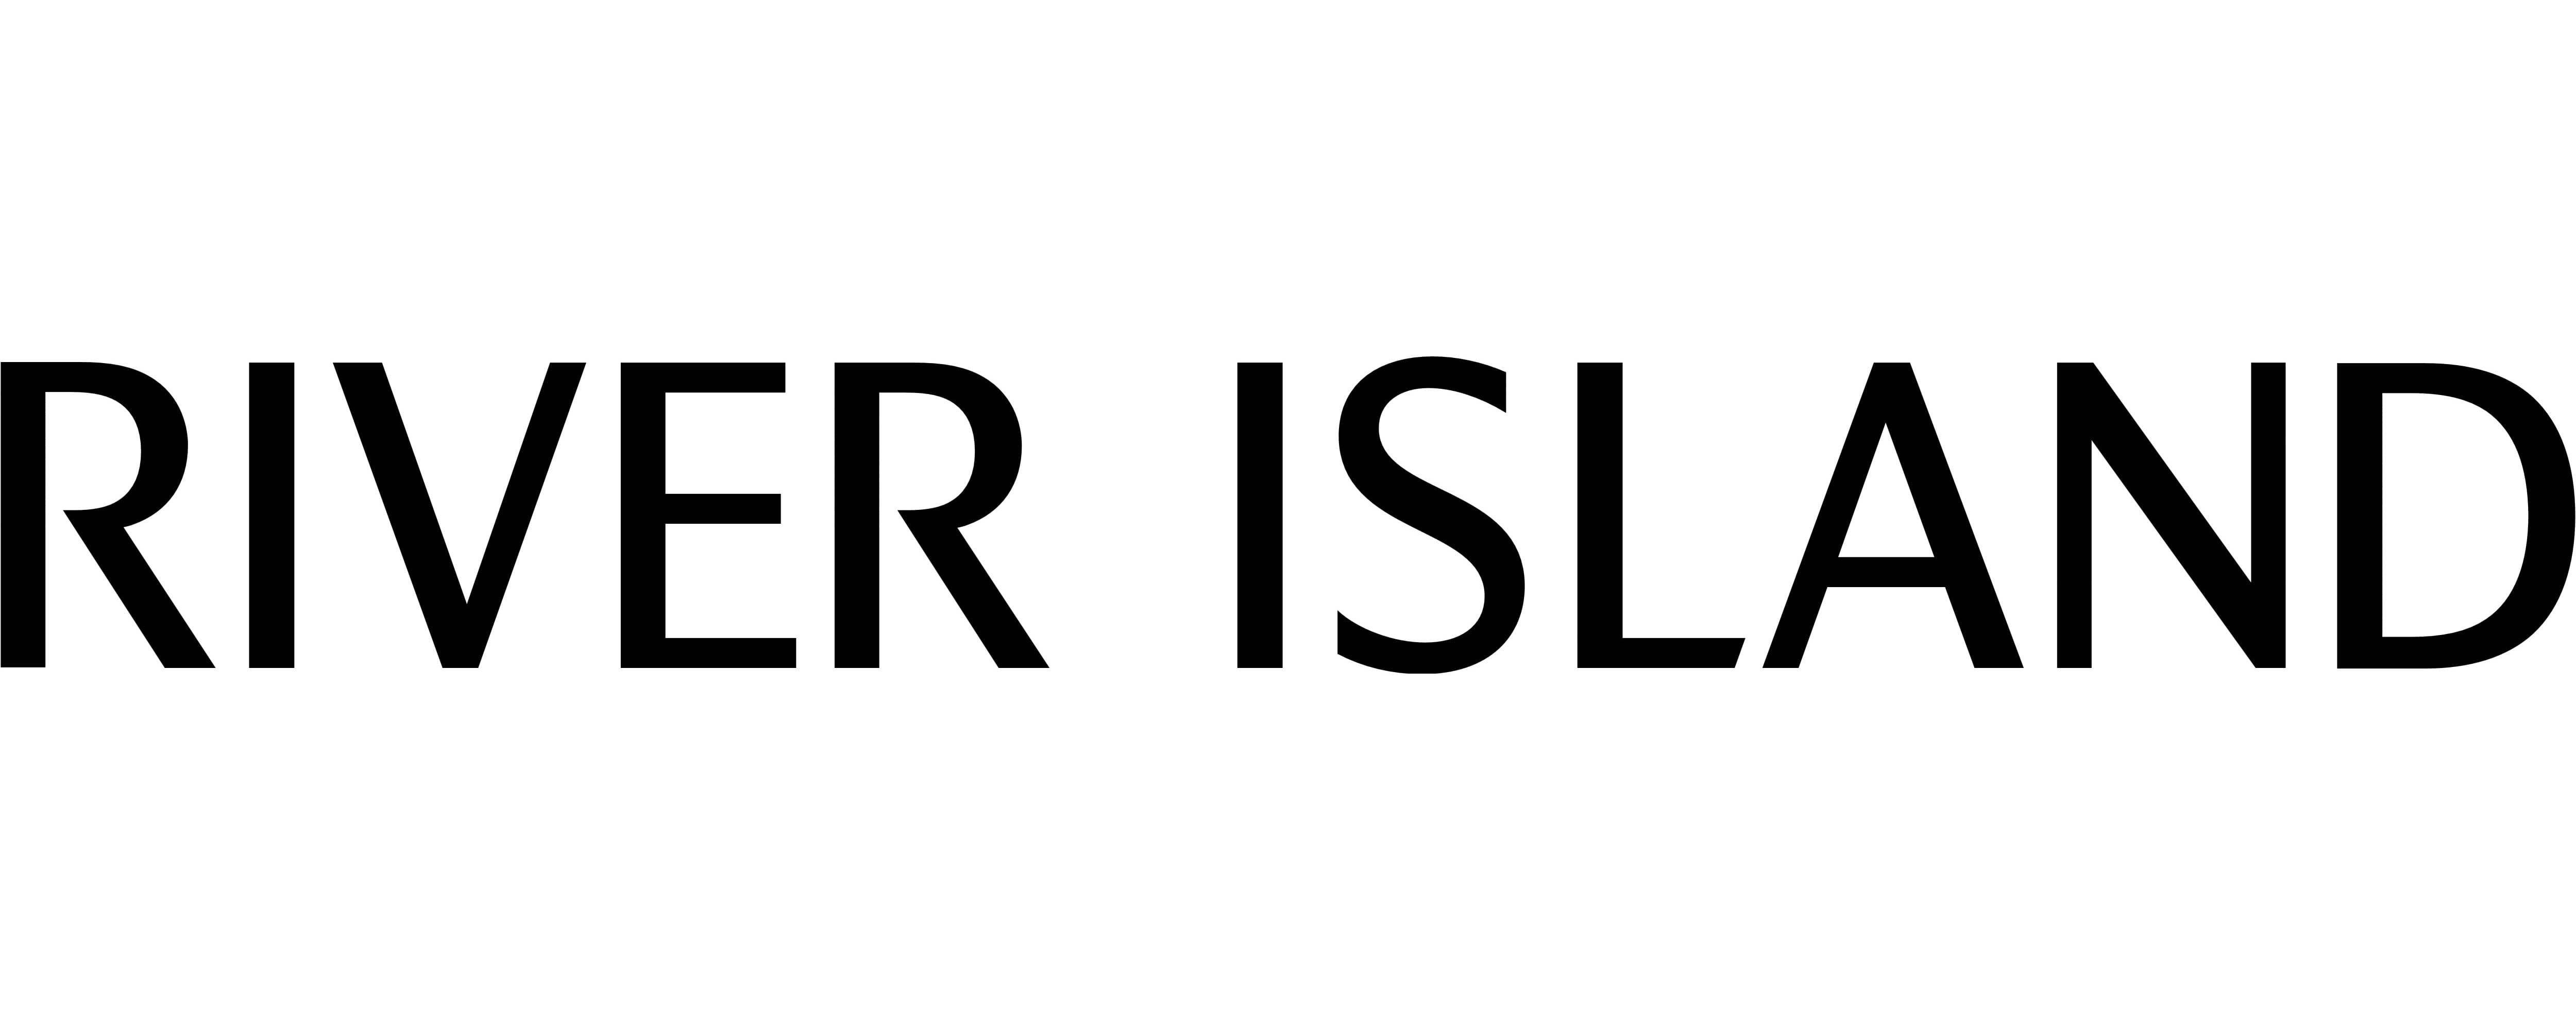 River-Island-logo.jpg